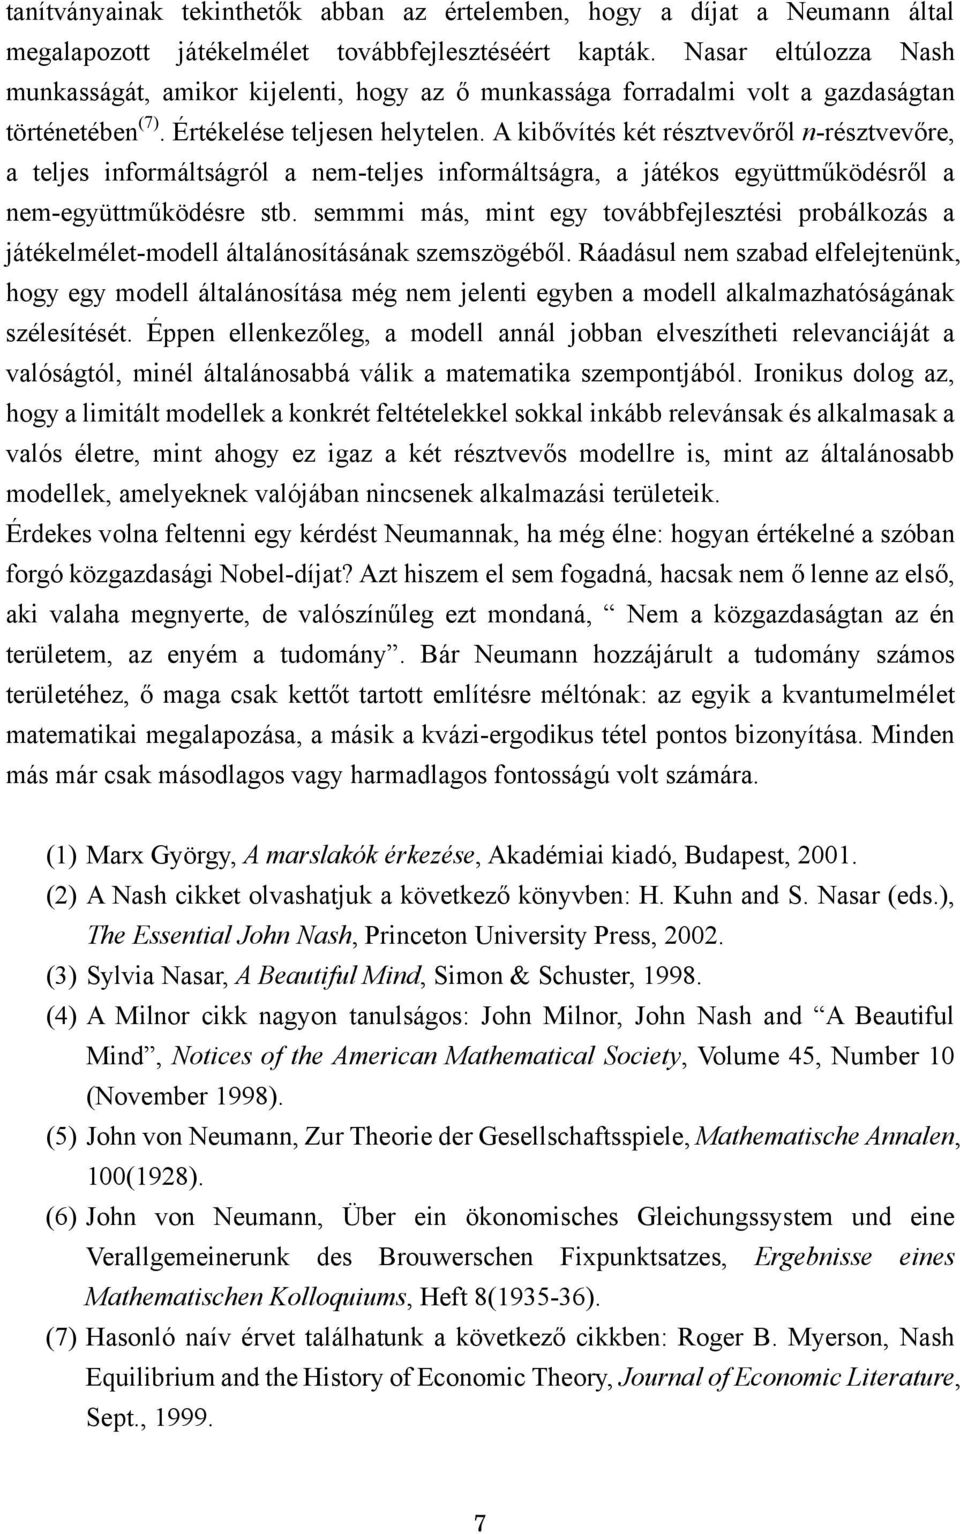 Neumann és Nash: A Beautiful Mind (Egy csodálatos elme) kritikája - PDF  Free Download